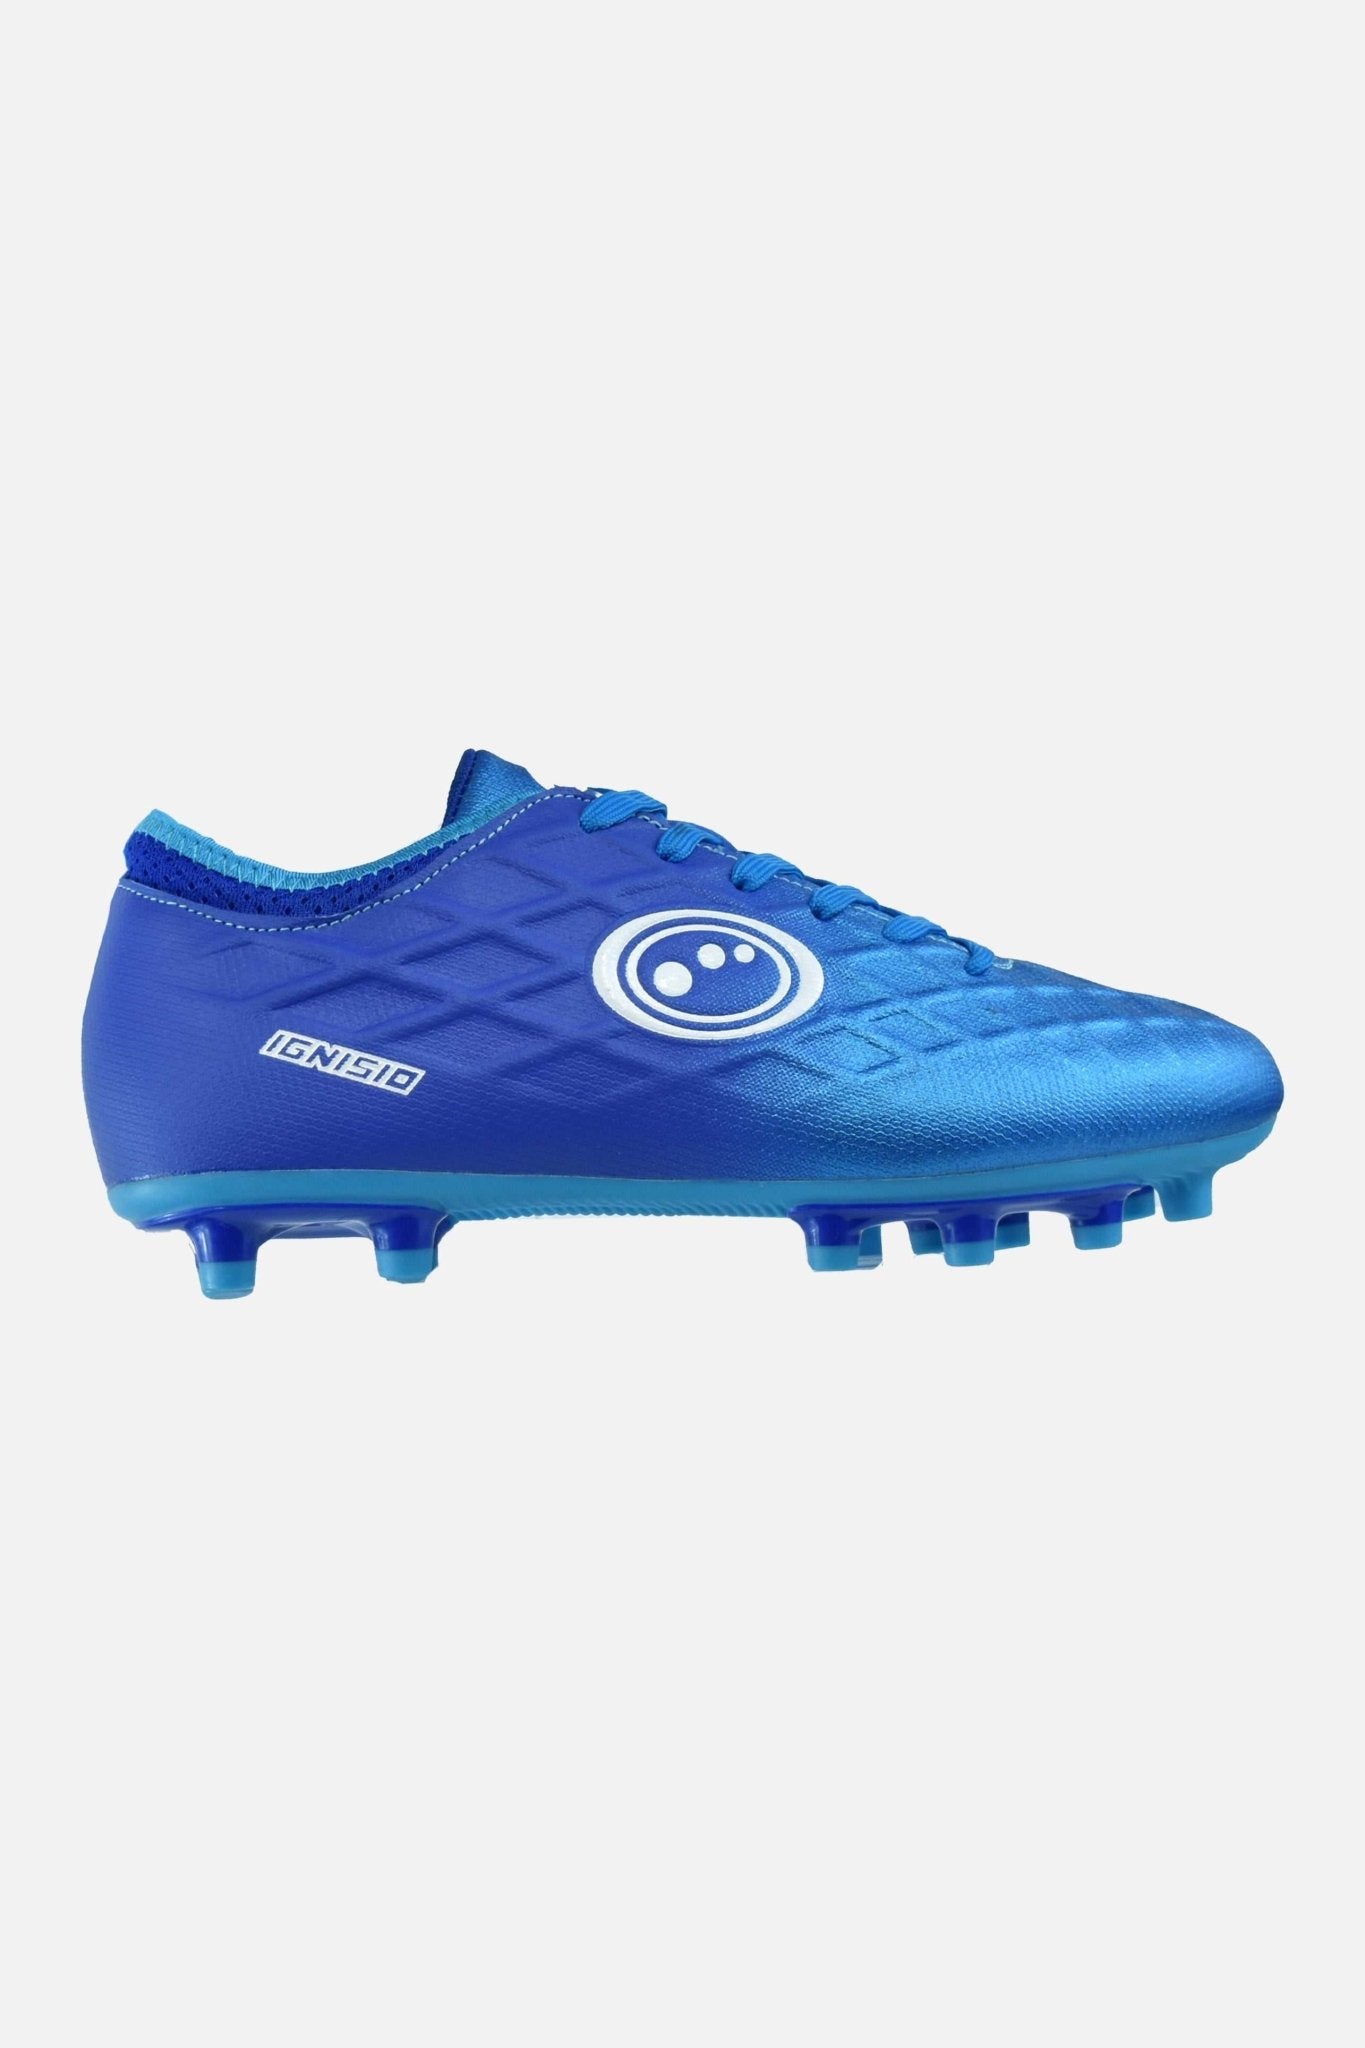 Senior Arctic Blue Ignisio Lace Up Football Boot - Optimum